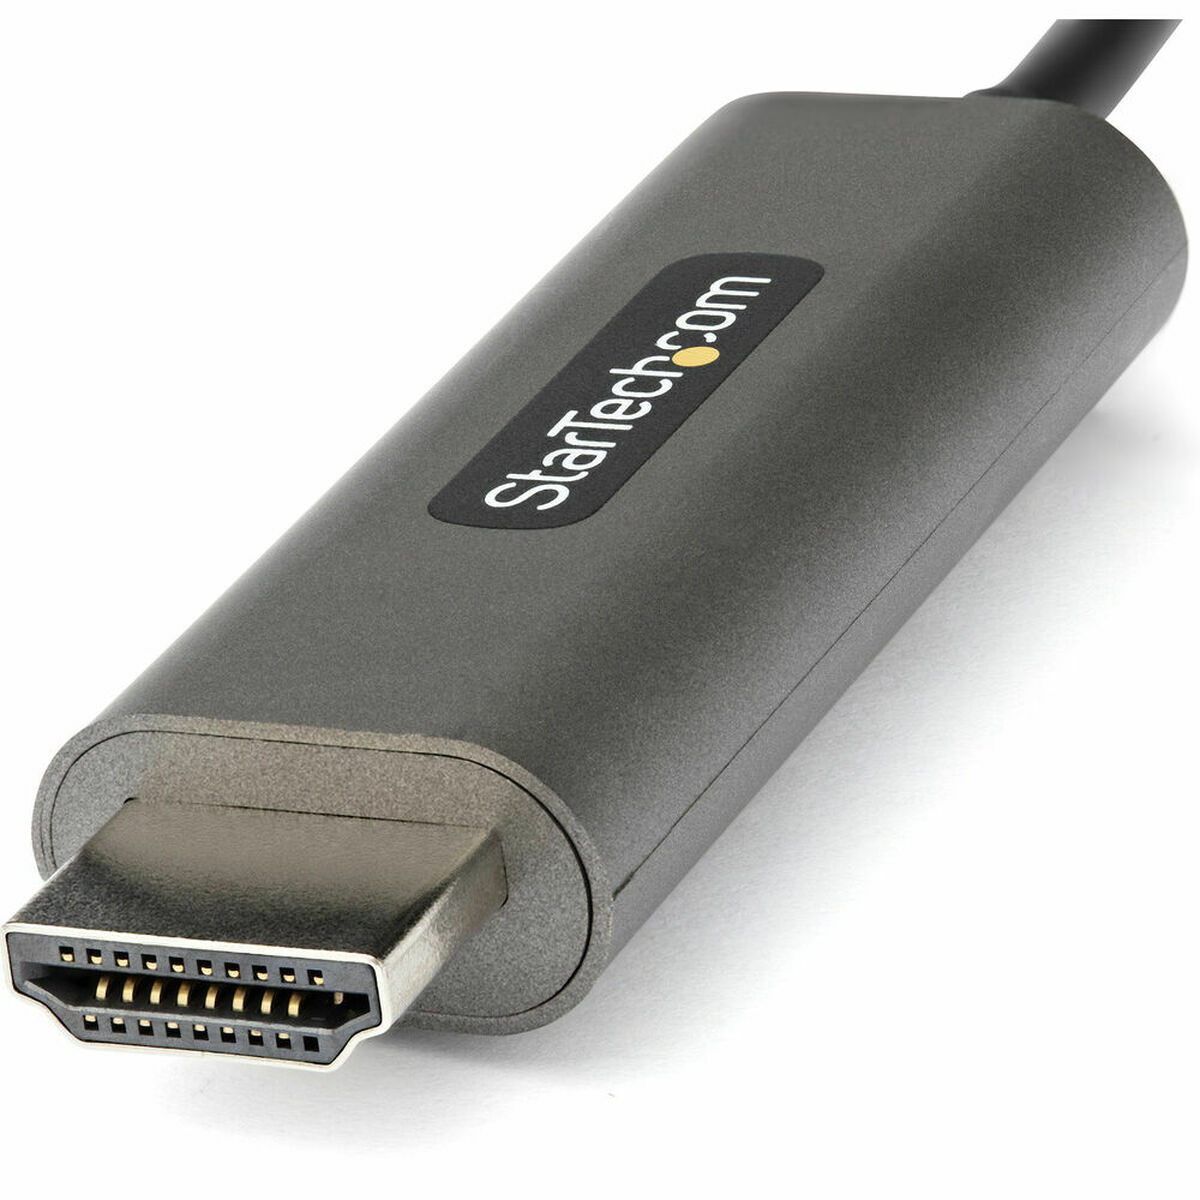 Tuntitarjouksena verkkokaupassamme Korhone: Tietokoneet & Elektroniikka on USB C – HDMI Adapteri Startech CDP2HDMM4MH HDMI Harmaa